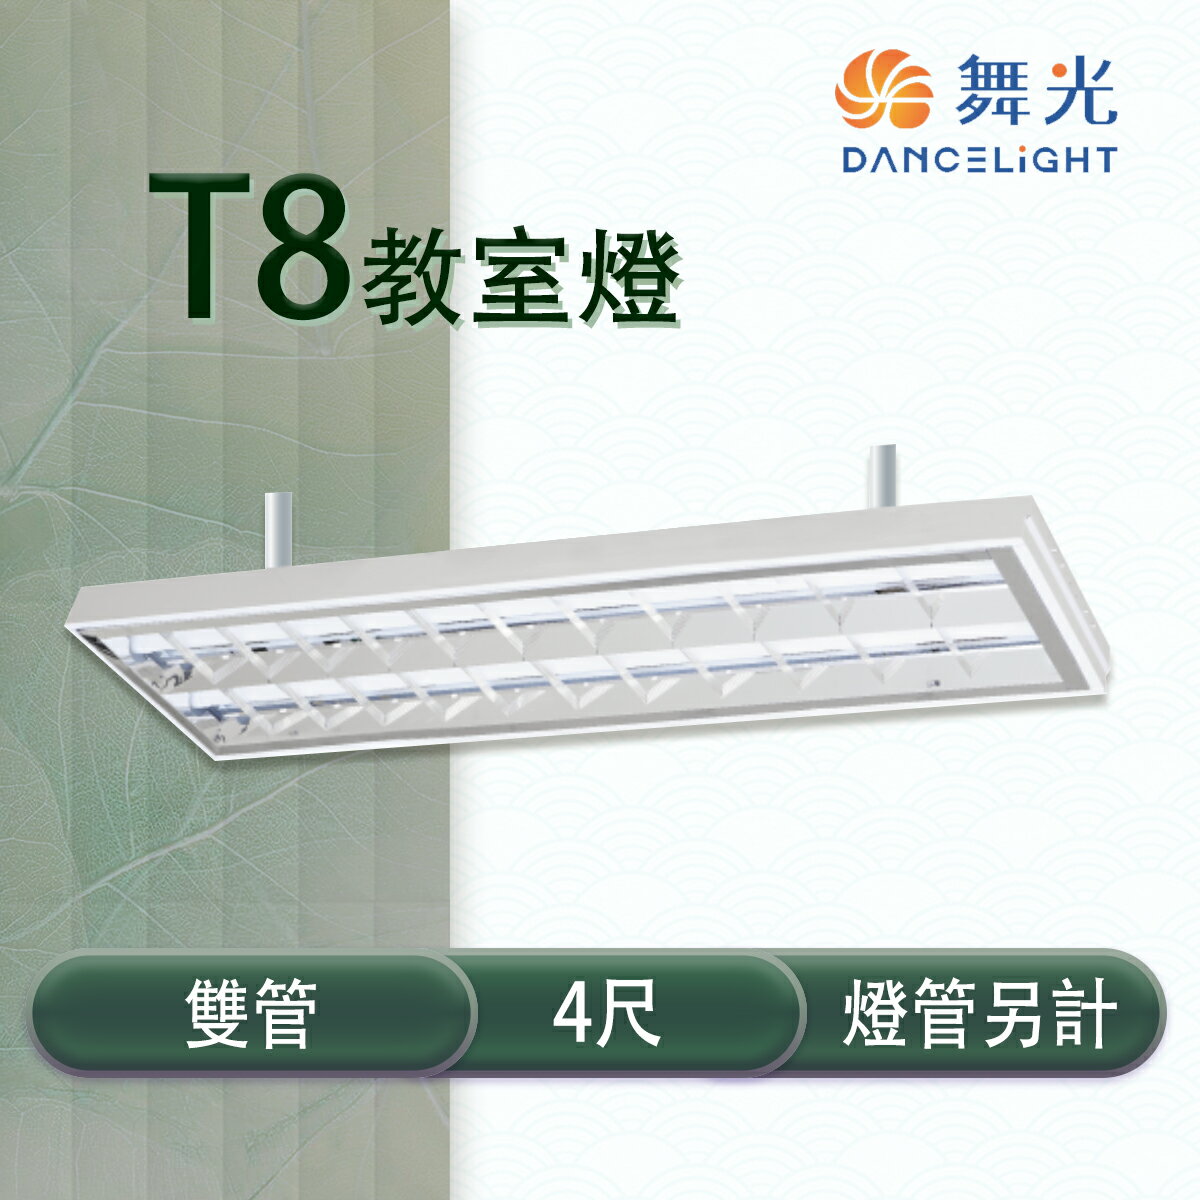 舞光 LED T8 4尺 教室燈具 雙管 冷軋鋼板 空台 燈管另計【永光照明】 MT2-LED-4267